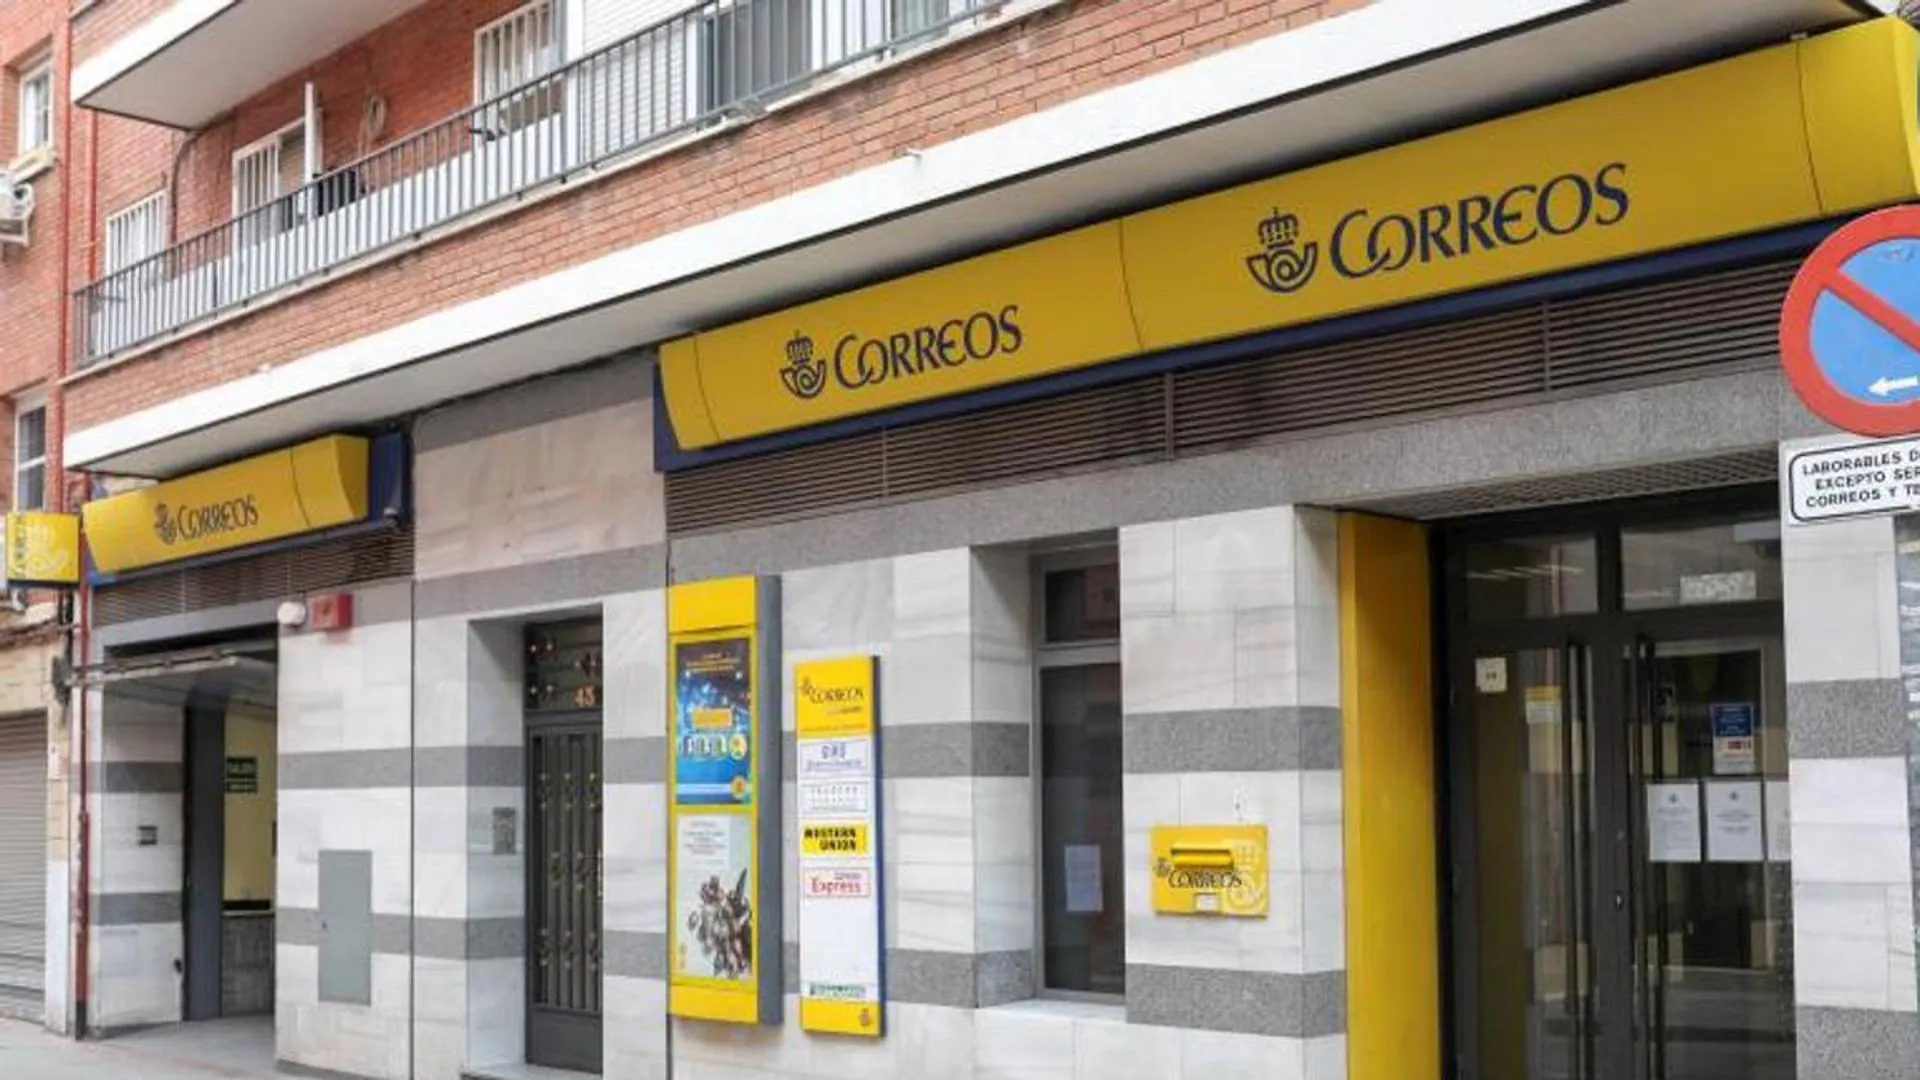 Cha fricción De acuerdo con Correos busca cubrir 302 puestos fijos en Canarias | Canarias7